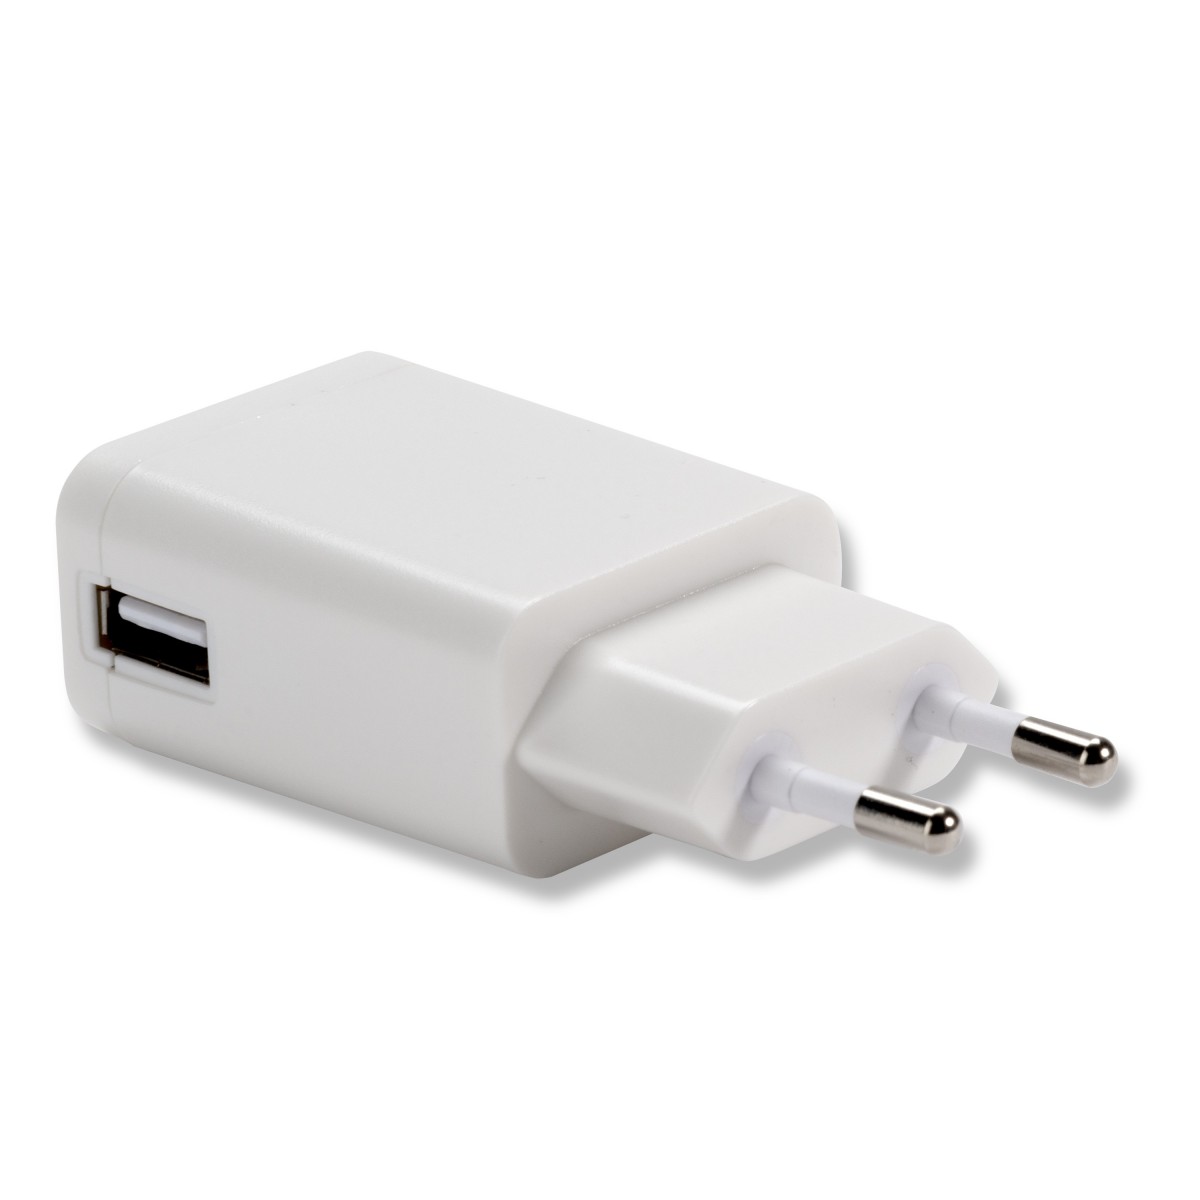 Chargeur secteur USB universel blanc - 4smarts